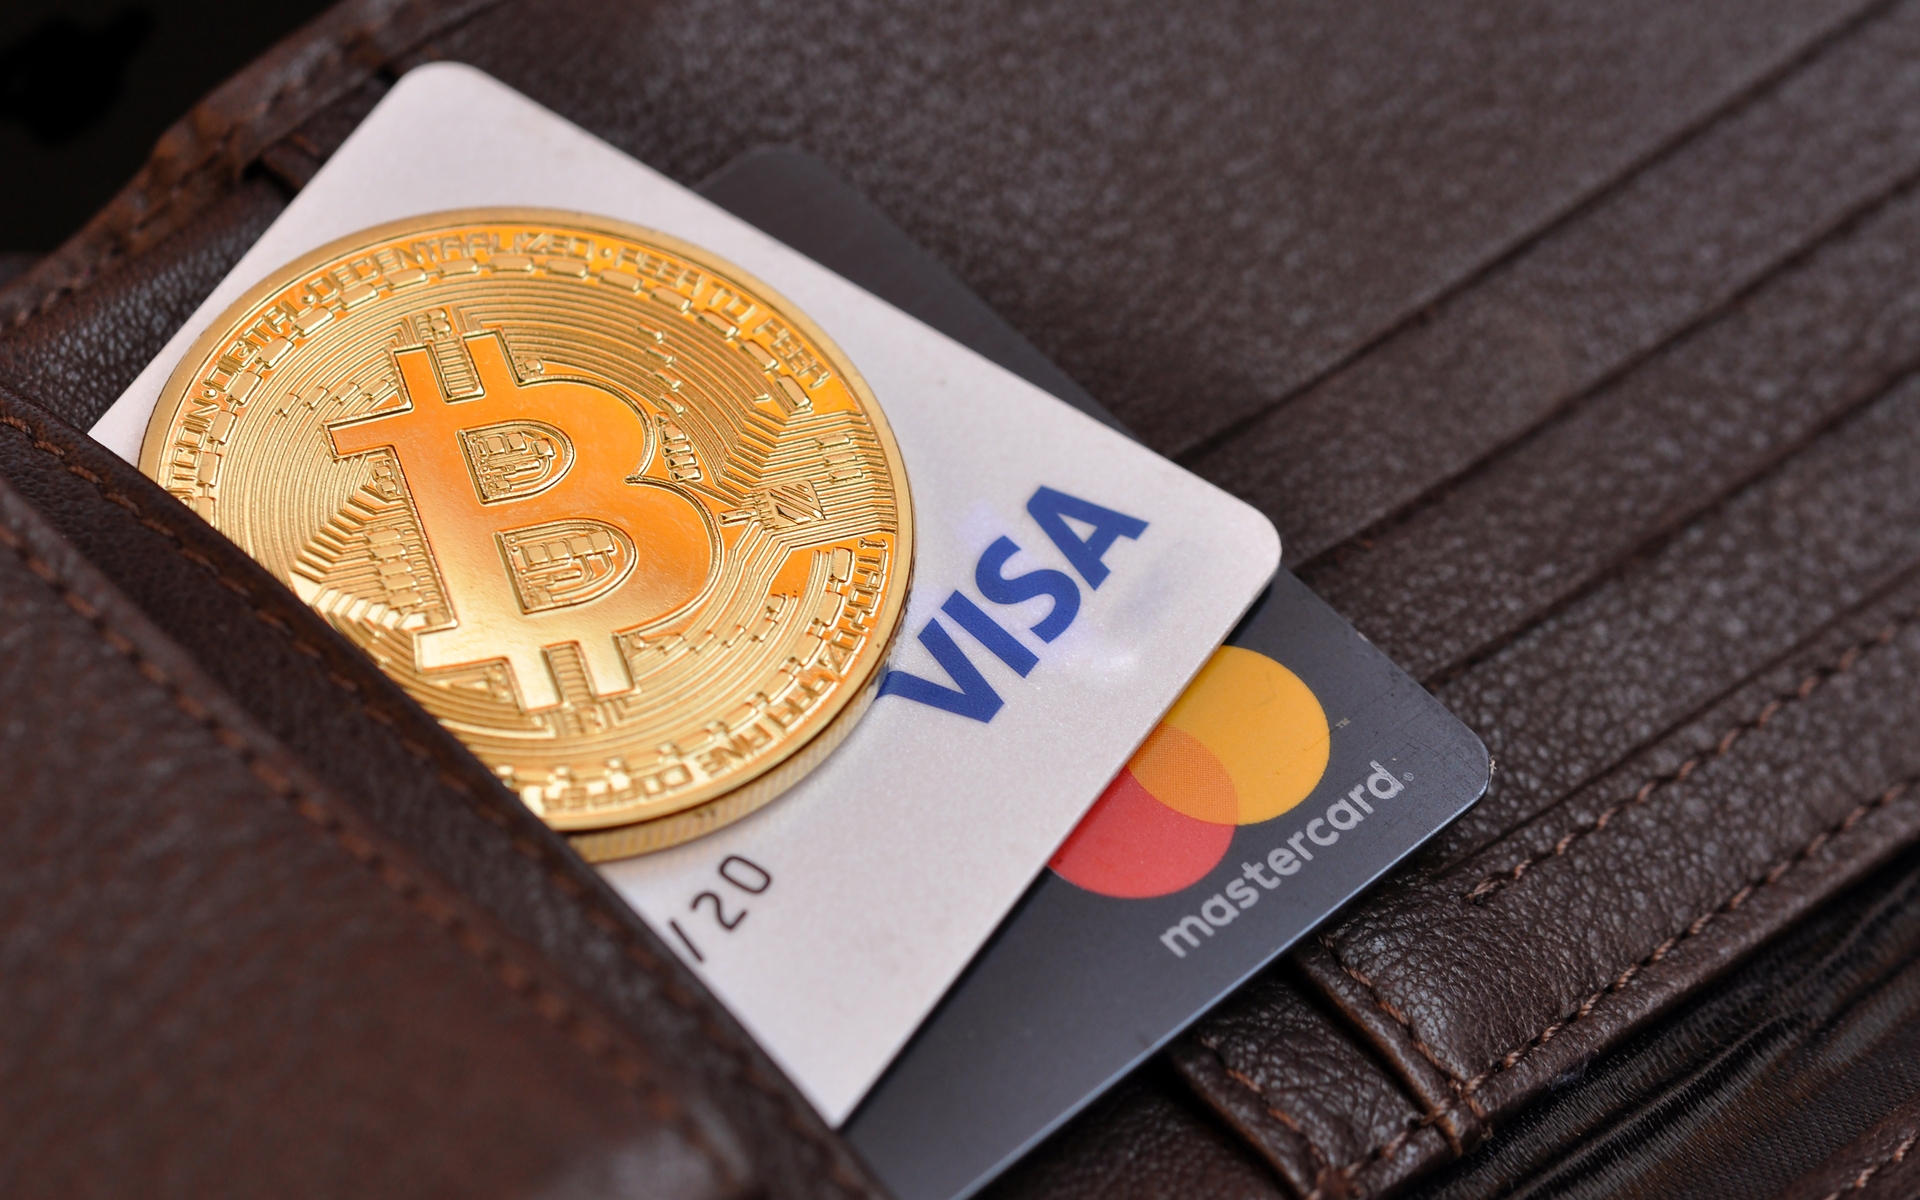 Italians Prefer Bitcoin over Visa or MasterCard